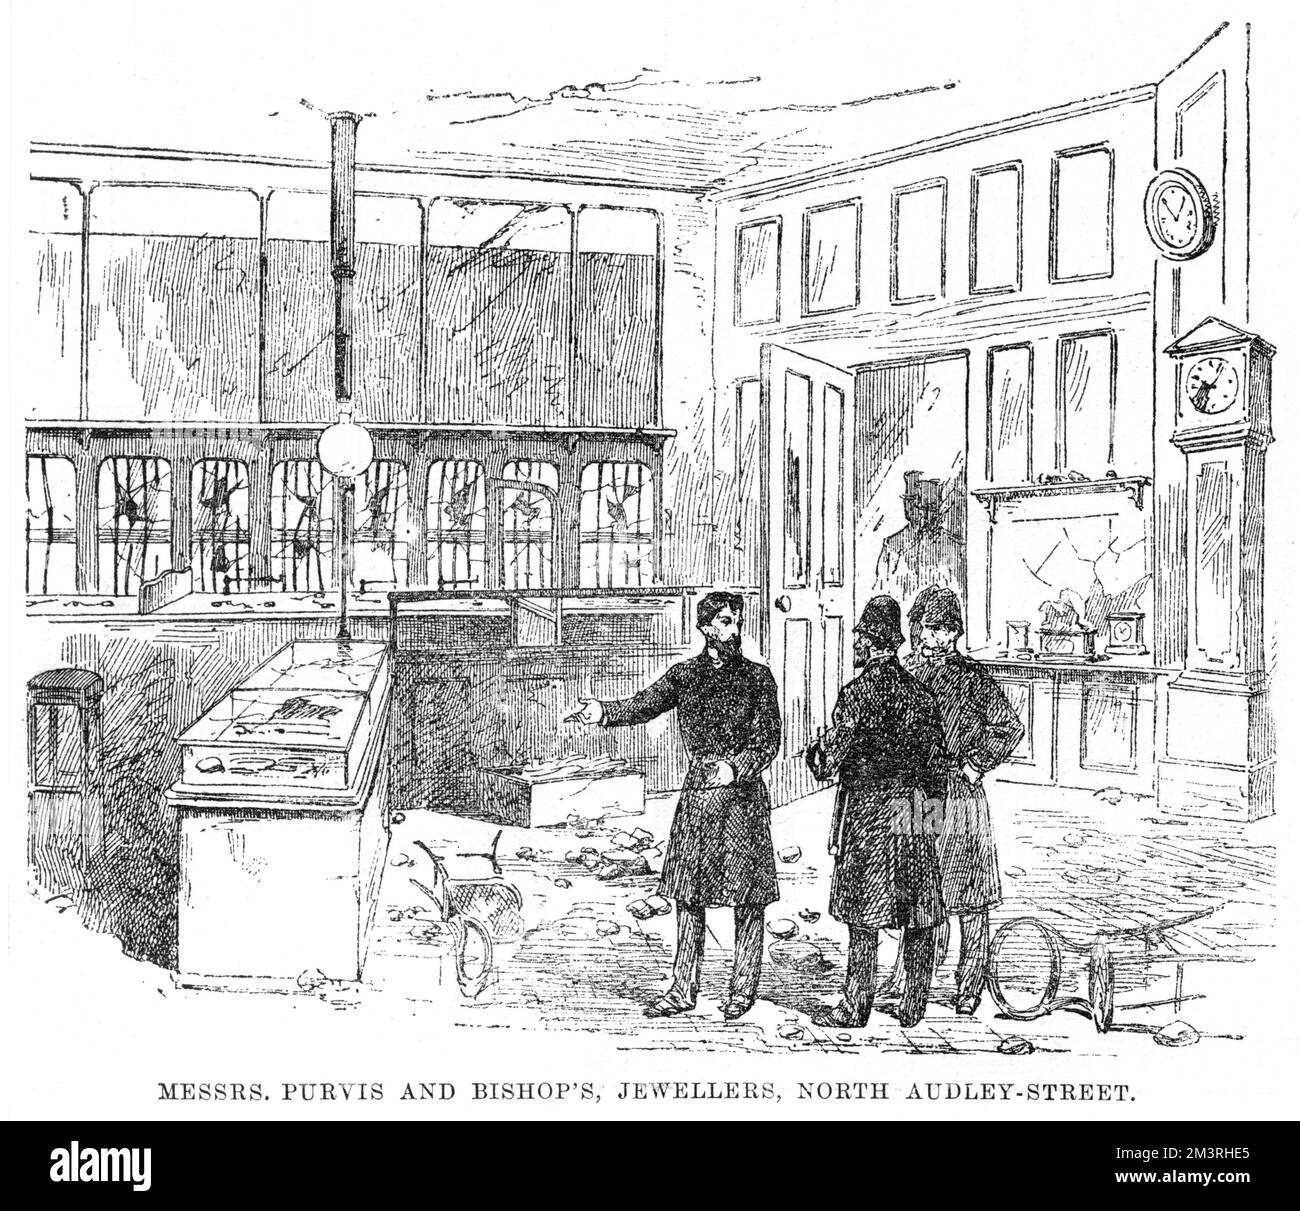 Les dommages causés par les émeutiers à Messrs Purvis et à la bijouterie Bishop's, sur la rue North Audley, lors des émeutes de 1886 dans le West End. Lors d’une réunion en plein air d’ouvriers et d’artisans du quai East End au chômage à Trafalgar Square, les gens ont été enflammés à la suite de discours incendiaires, et se sont révoltés, causant des ravages dans les rues à la mode du West End. Date: 1886 Banque D'Images